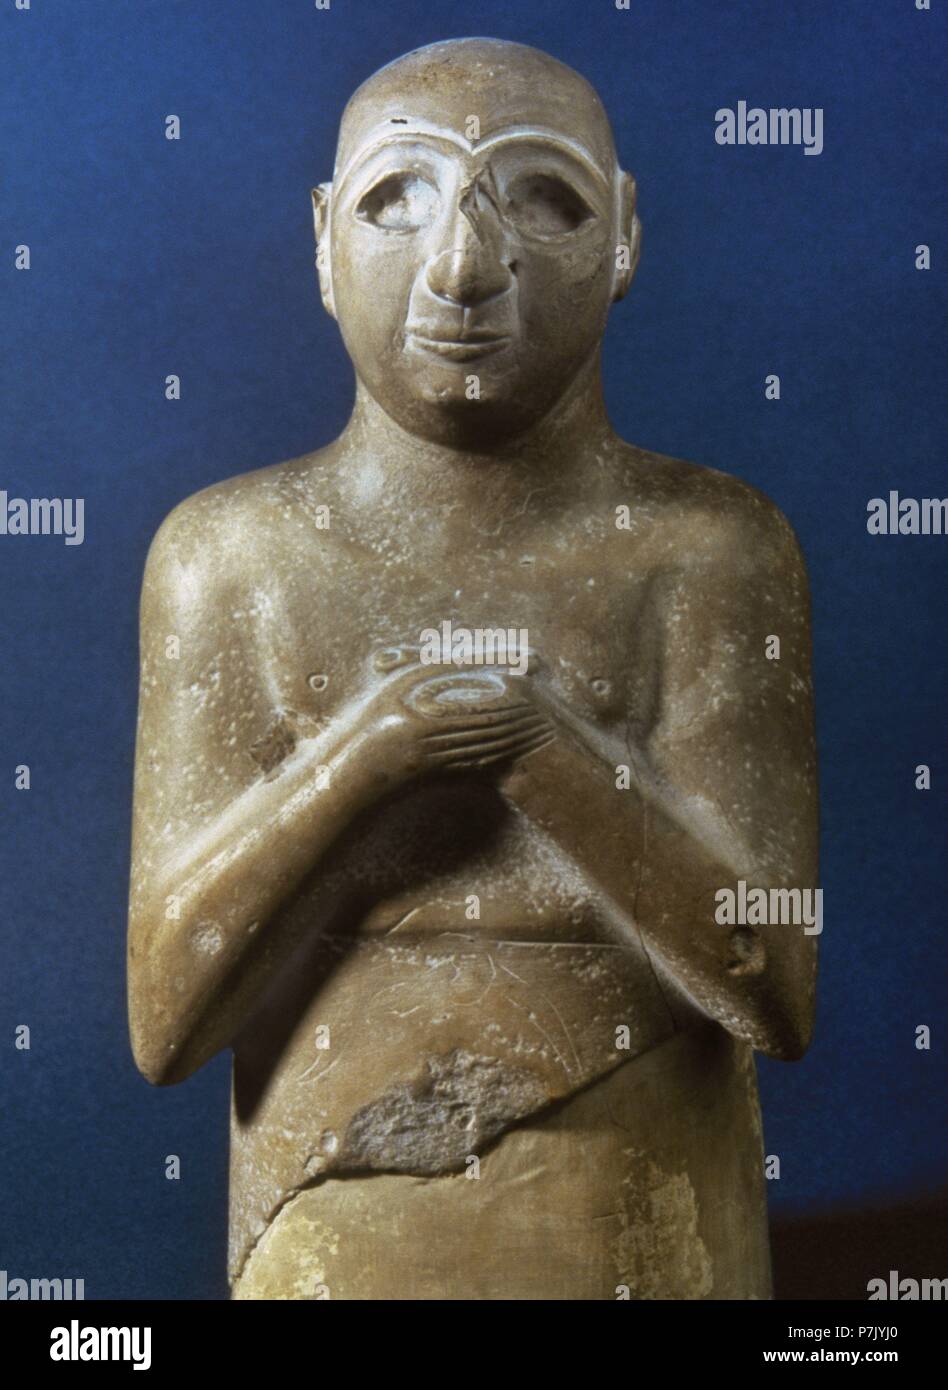 Statua recante una iscrizione sul retro: Satam, figlio di Lu-Barab, figlio di Lugal-Kisal-si, re di Uruk, servo di Girim-si, principe di Uruk. Calcare, Early Dynastic III, ca. 2400 BC. Il museo del Louvre. Parigi, Francia. Foto Stock